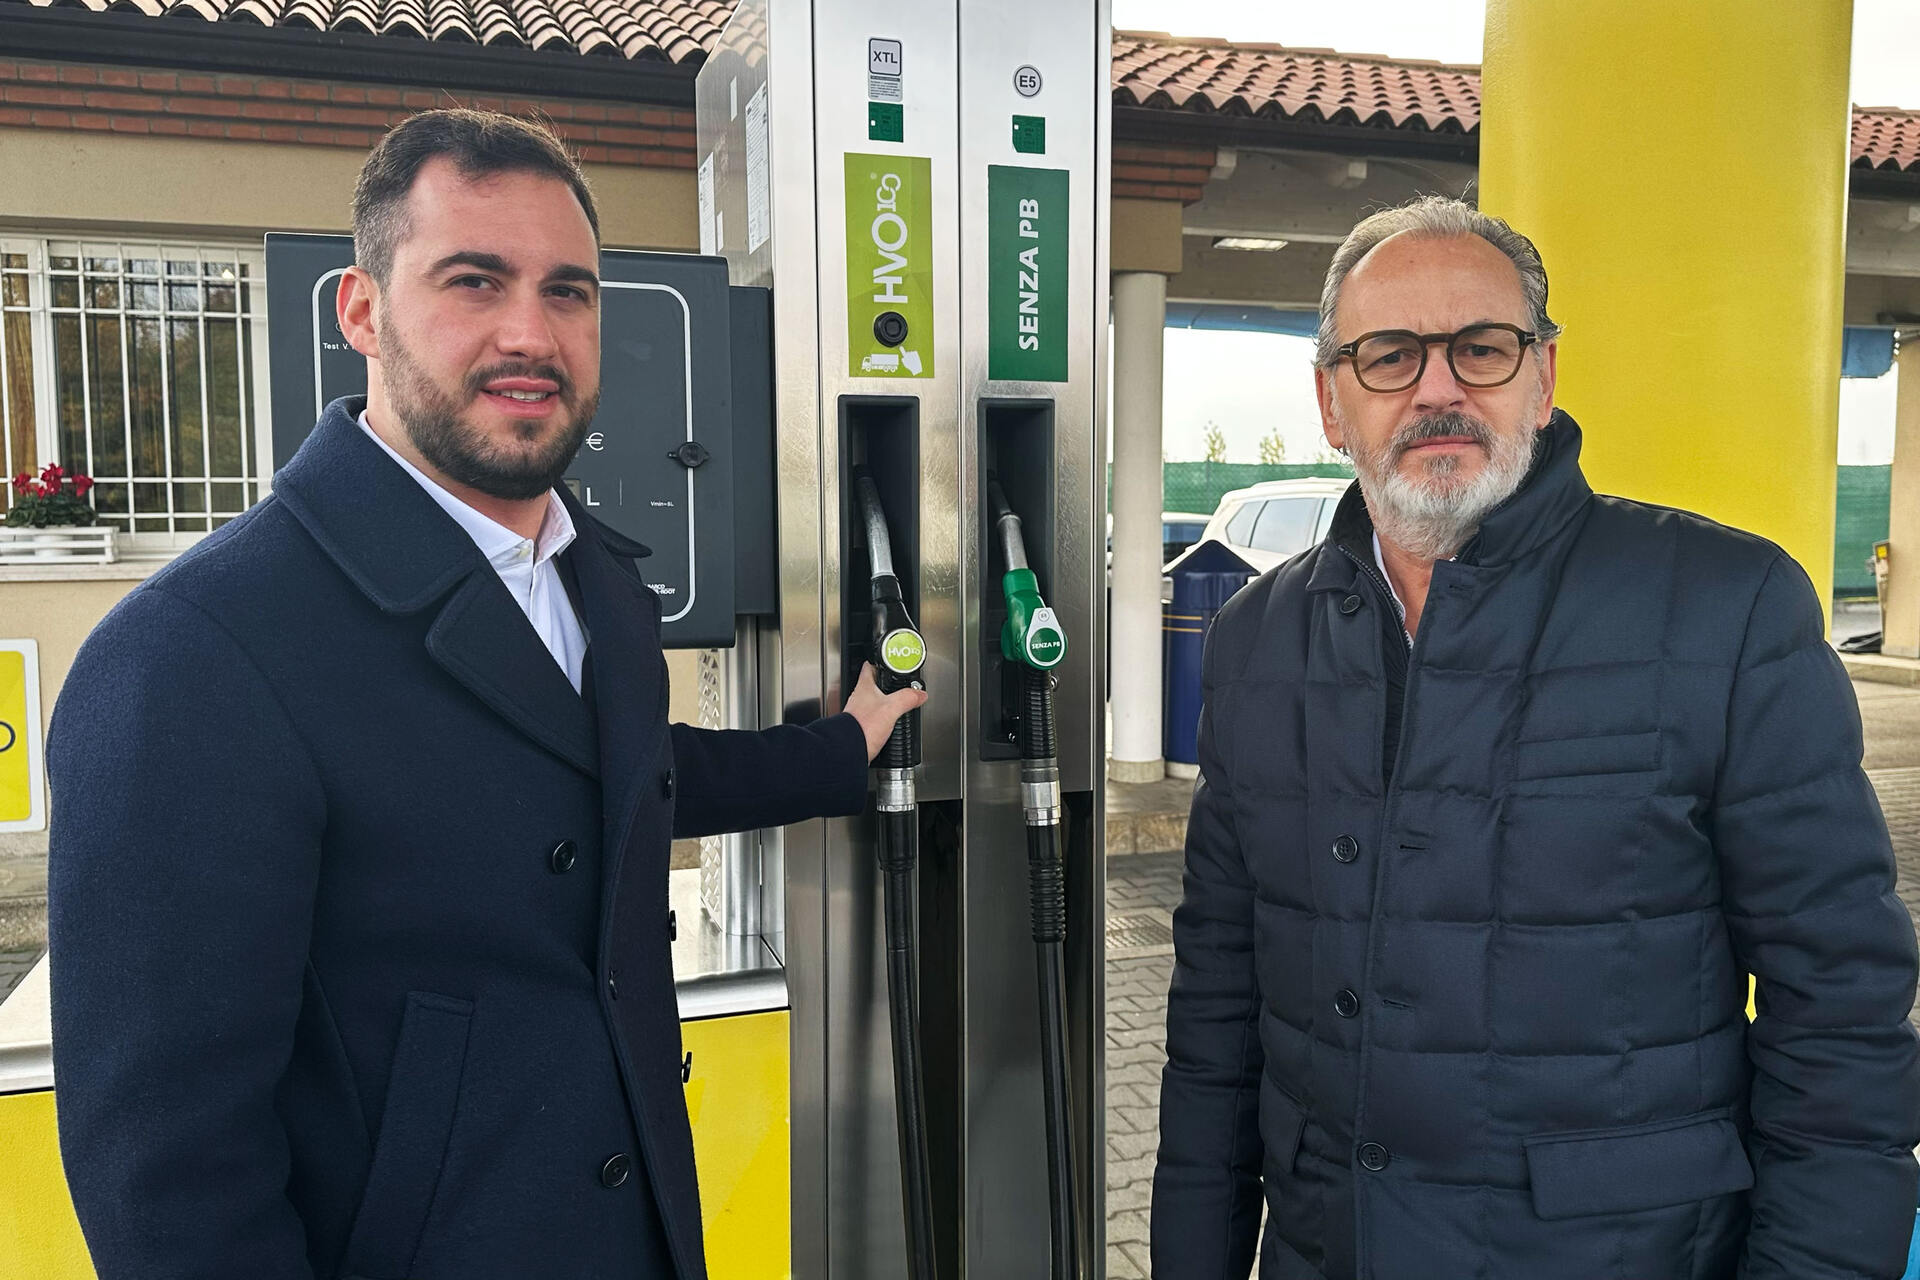 Biodiesel: Nicola Cavatton ja Luca Cavatton ovat Costantin Span toimitusjohtaja ja HVO100:n johtaja.